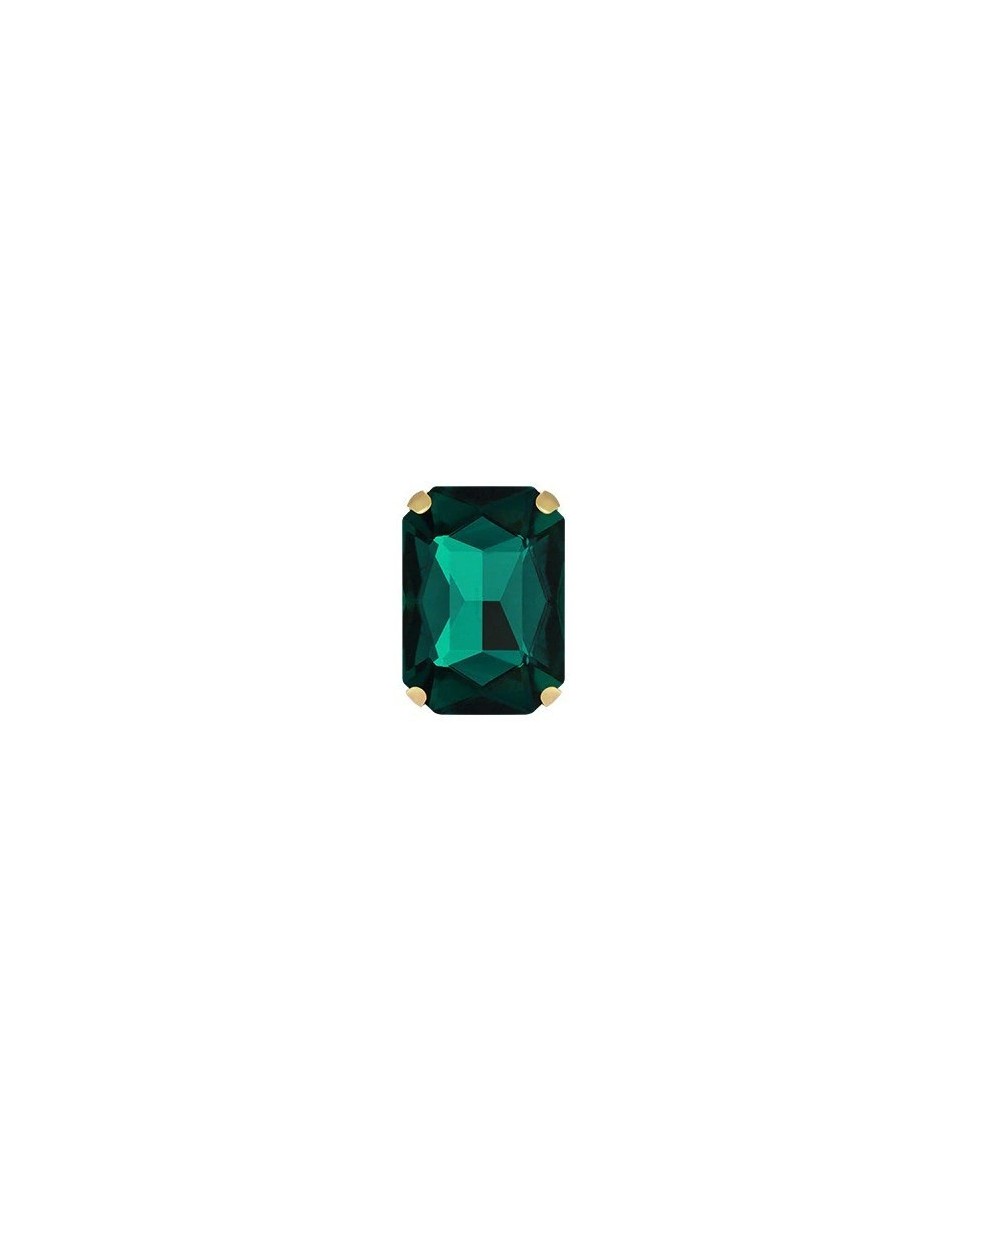 Stačiakampiai prisiuvami kristalai smaragdo sp., 10x14mm, 1 vnt.